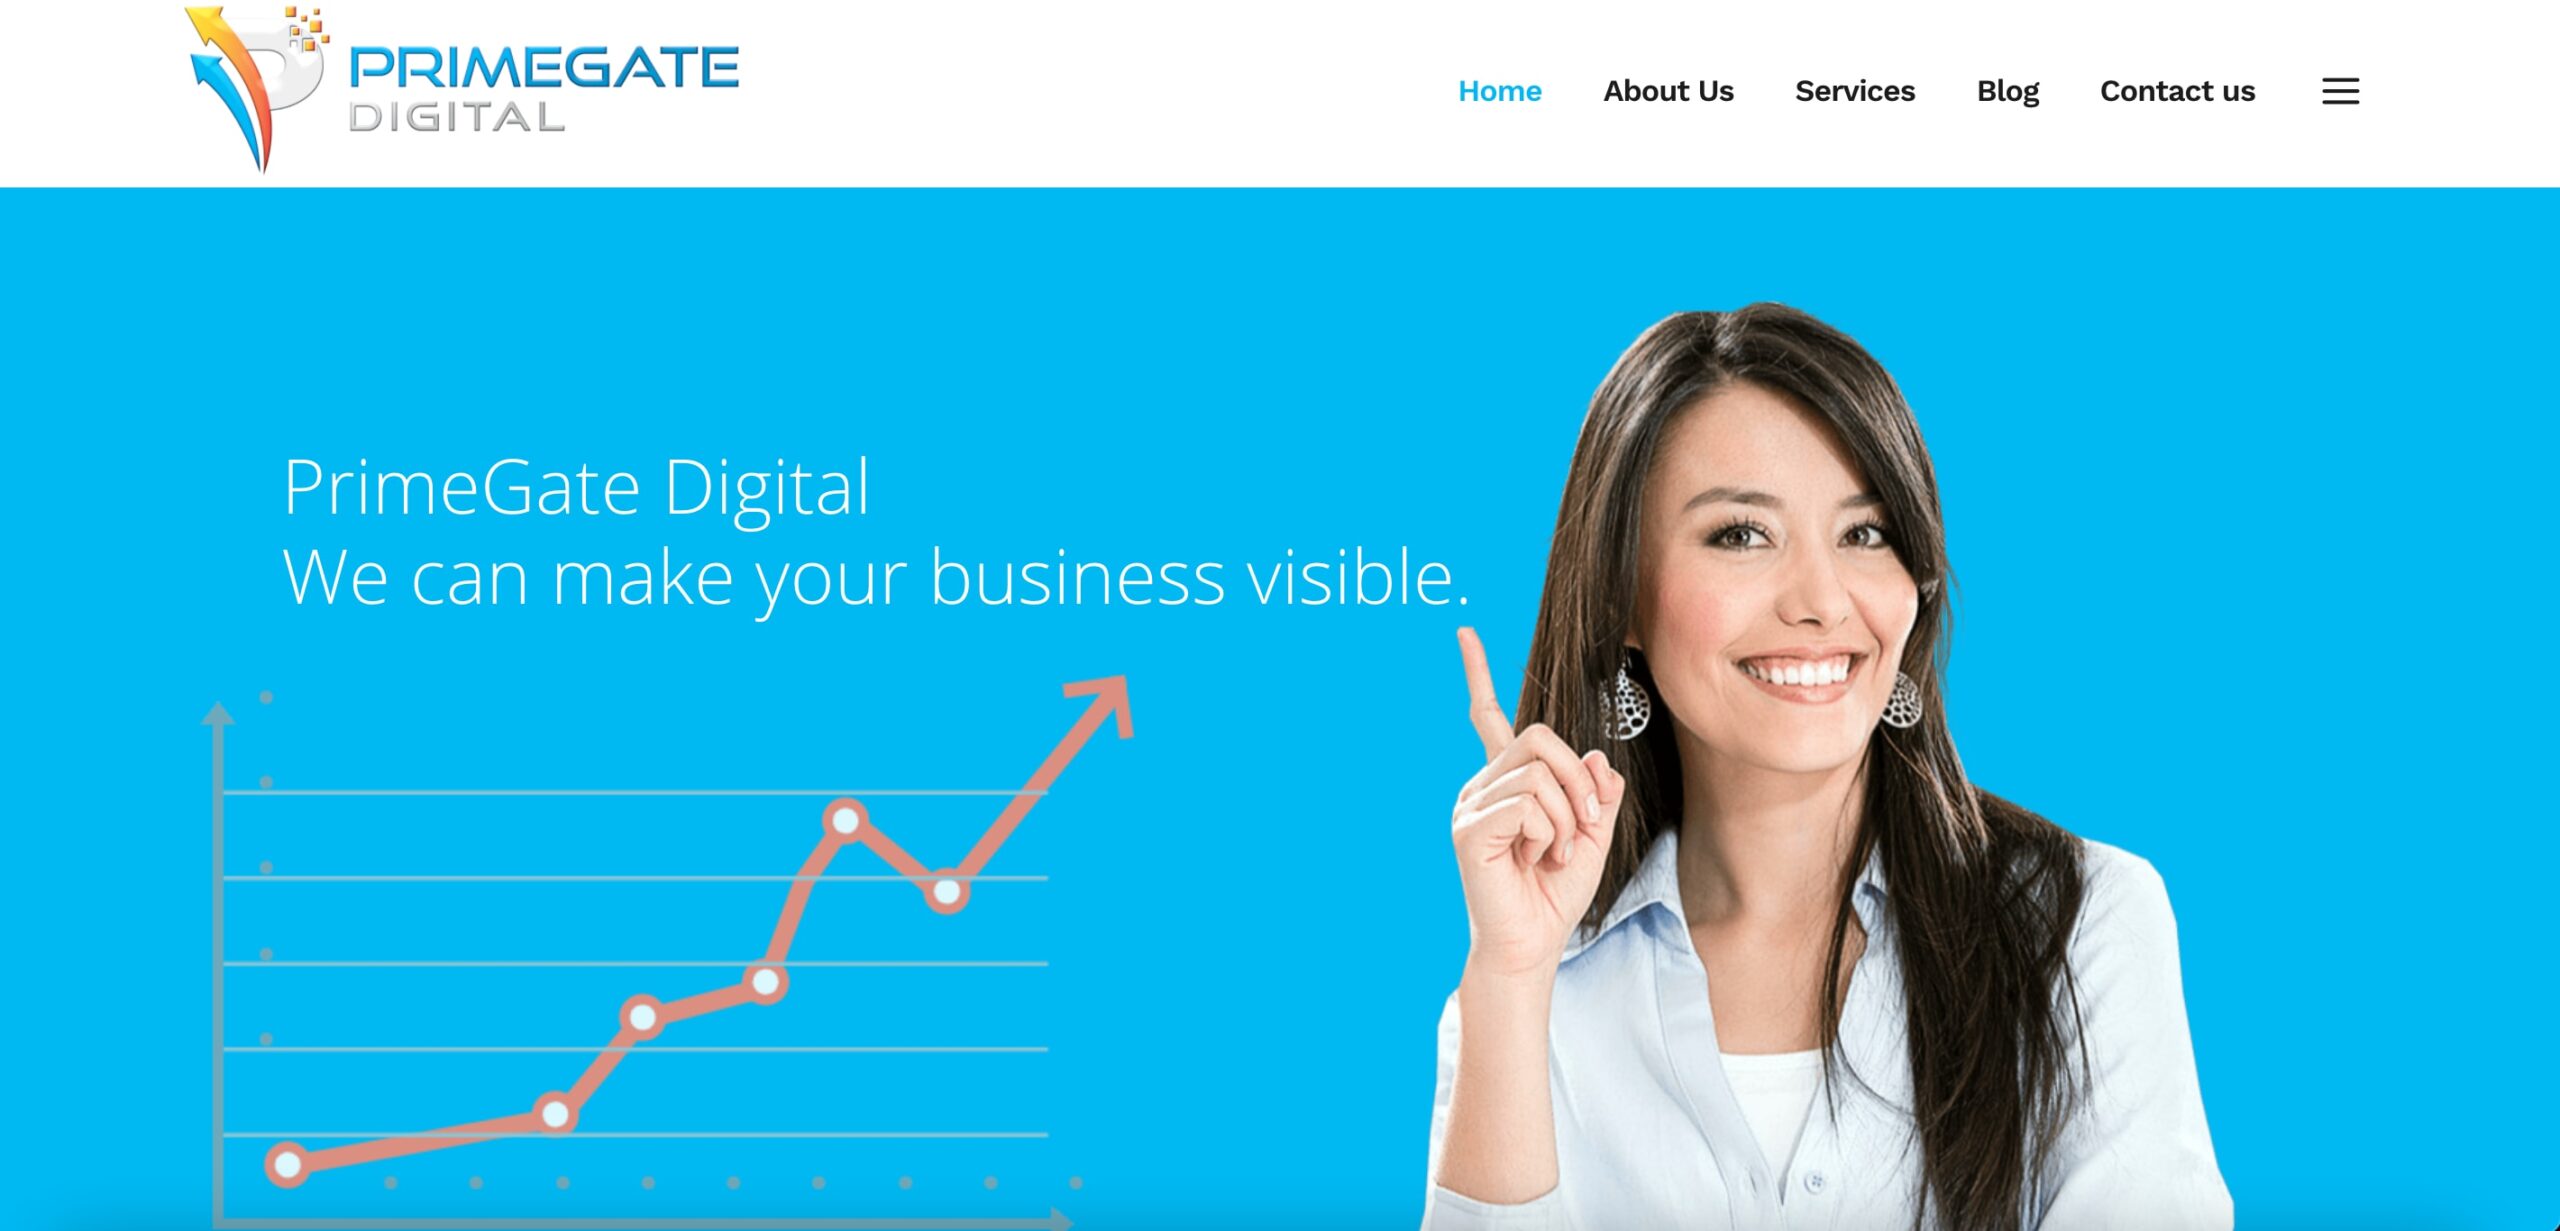 Primegate Digital blog